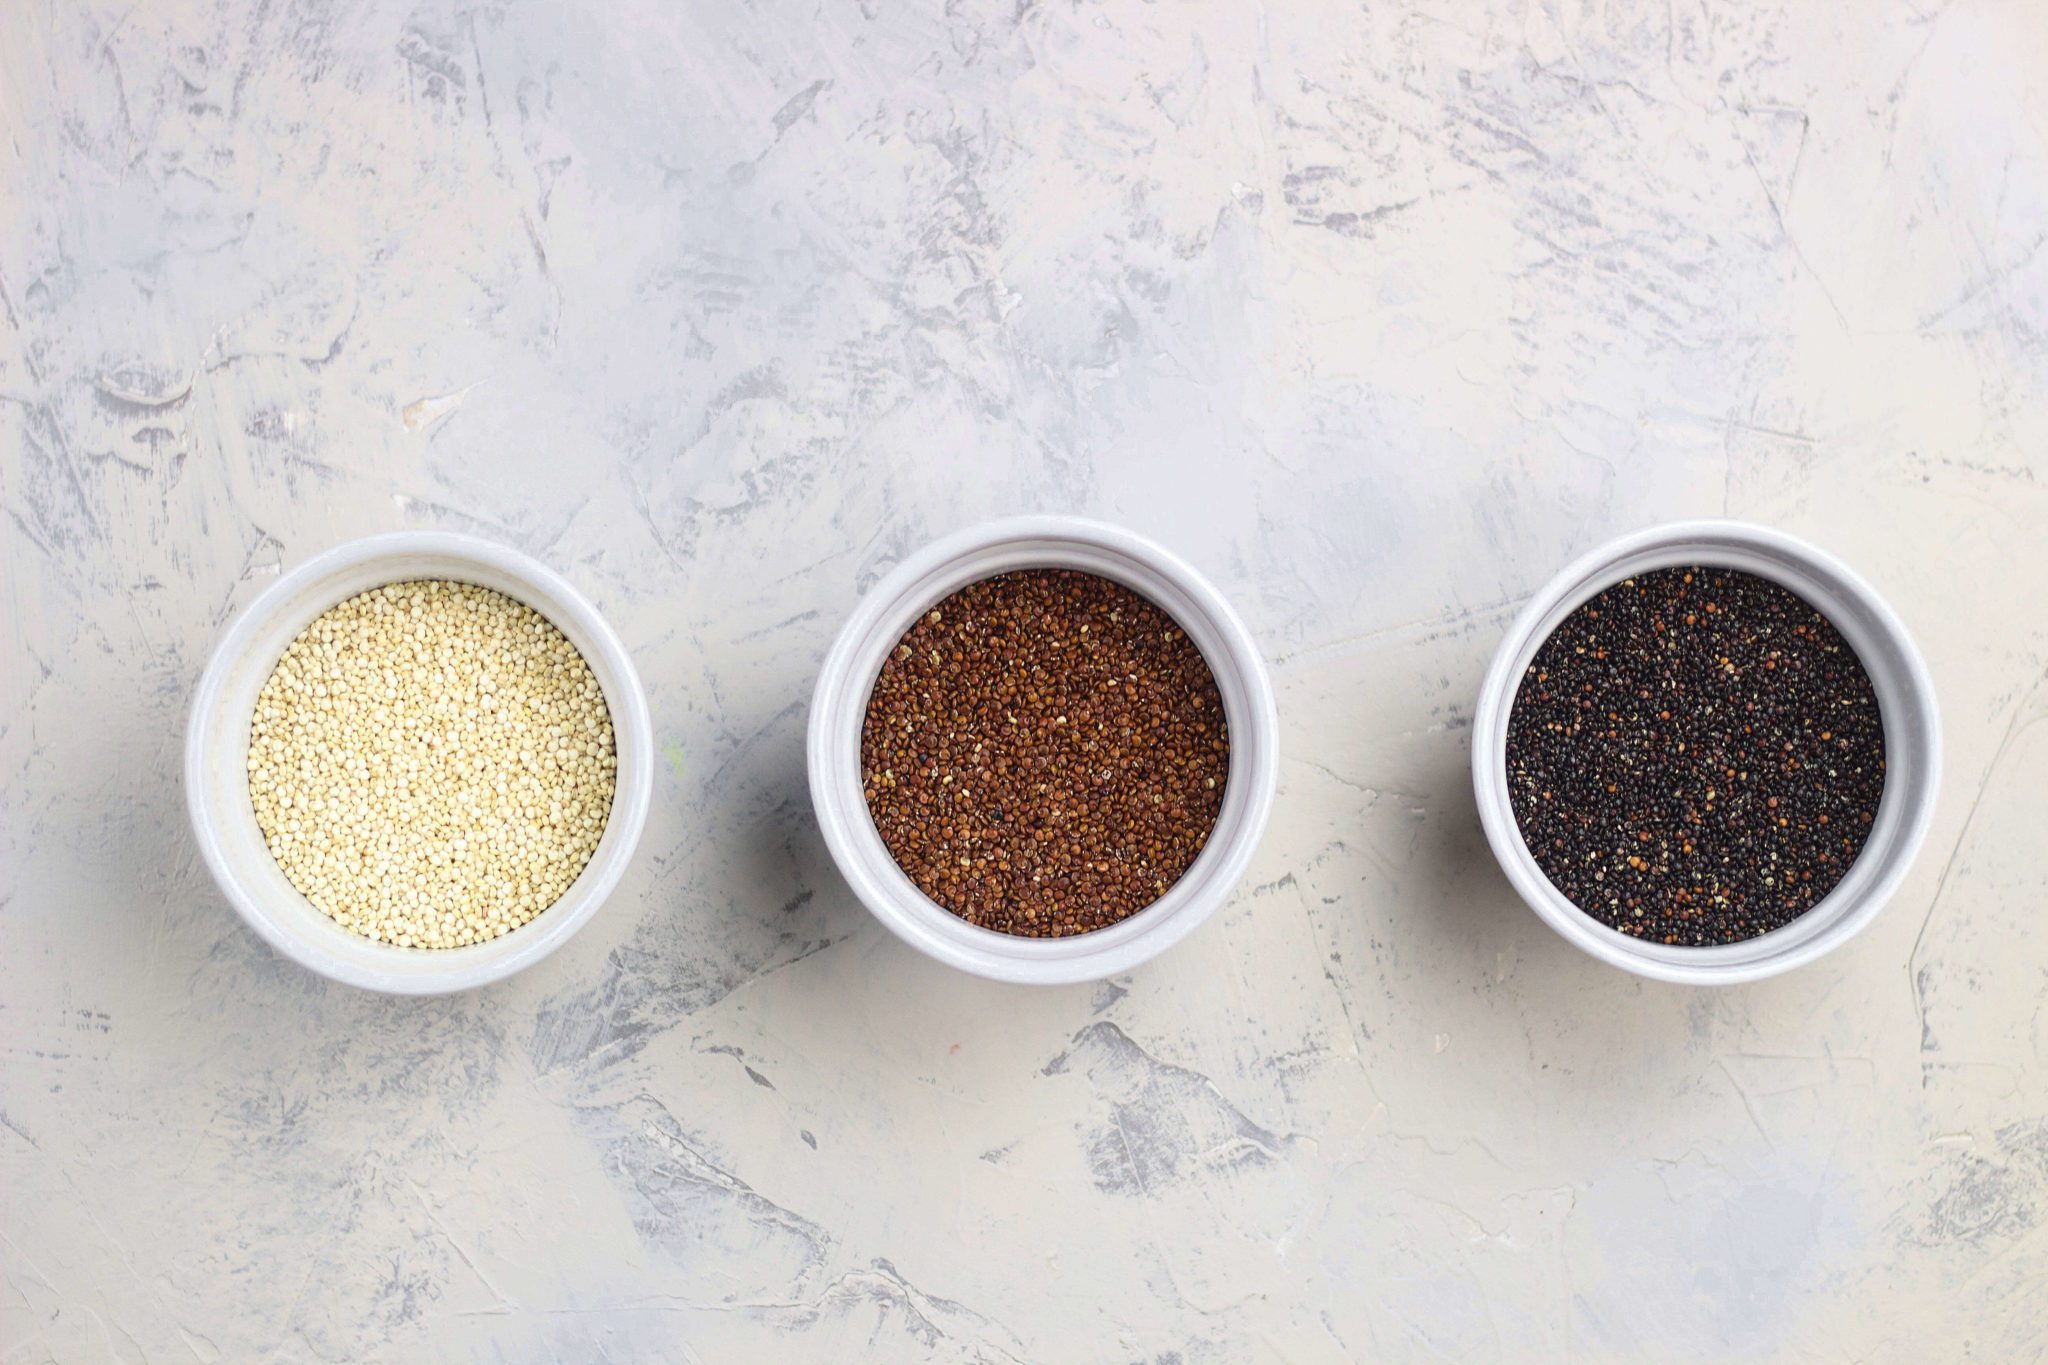 White quinoa, red quinoa, black quinoa, types of quinoa